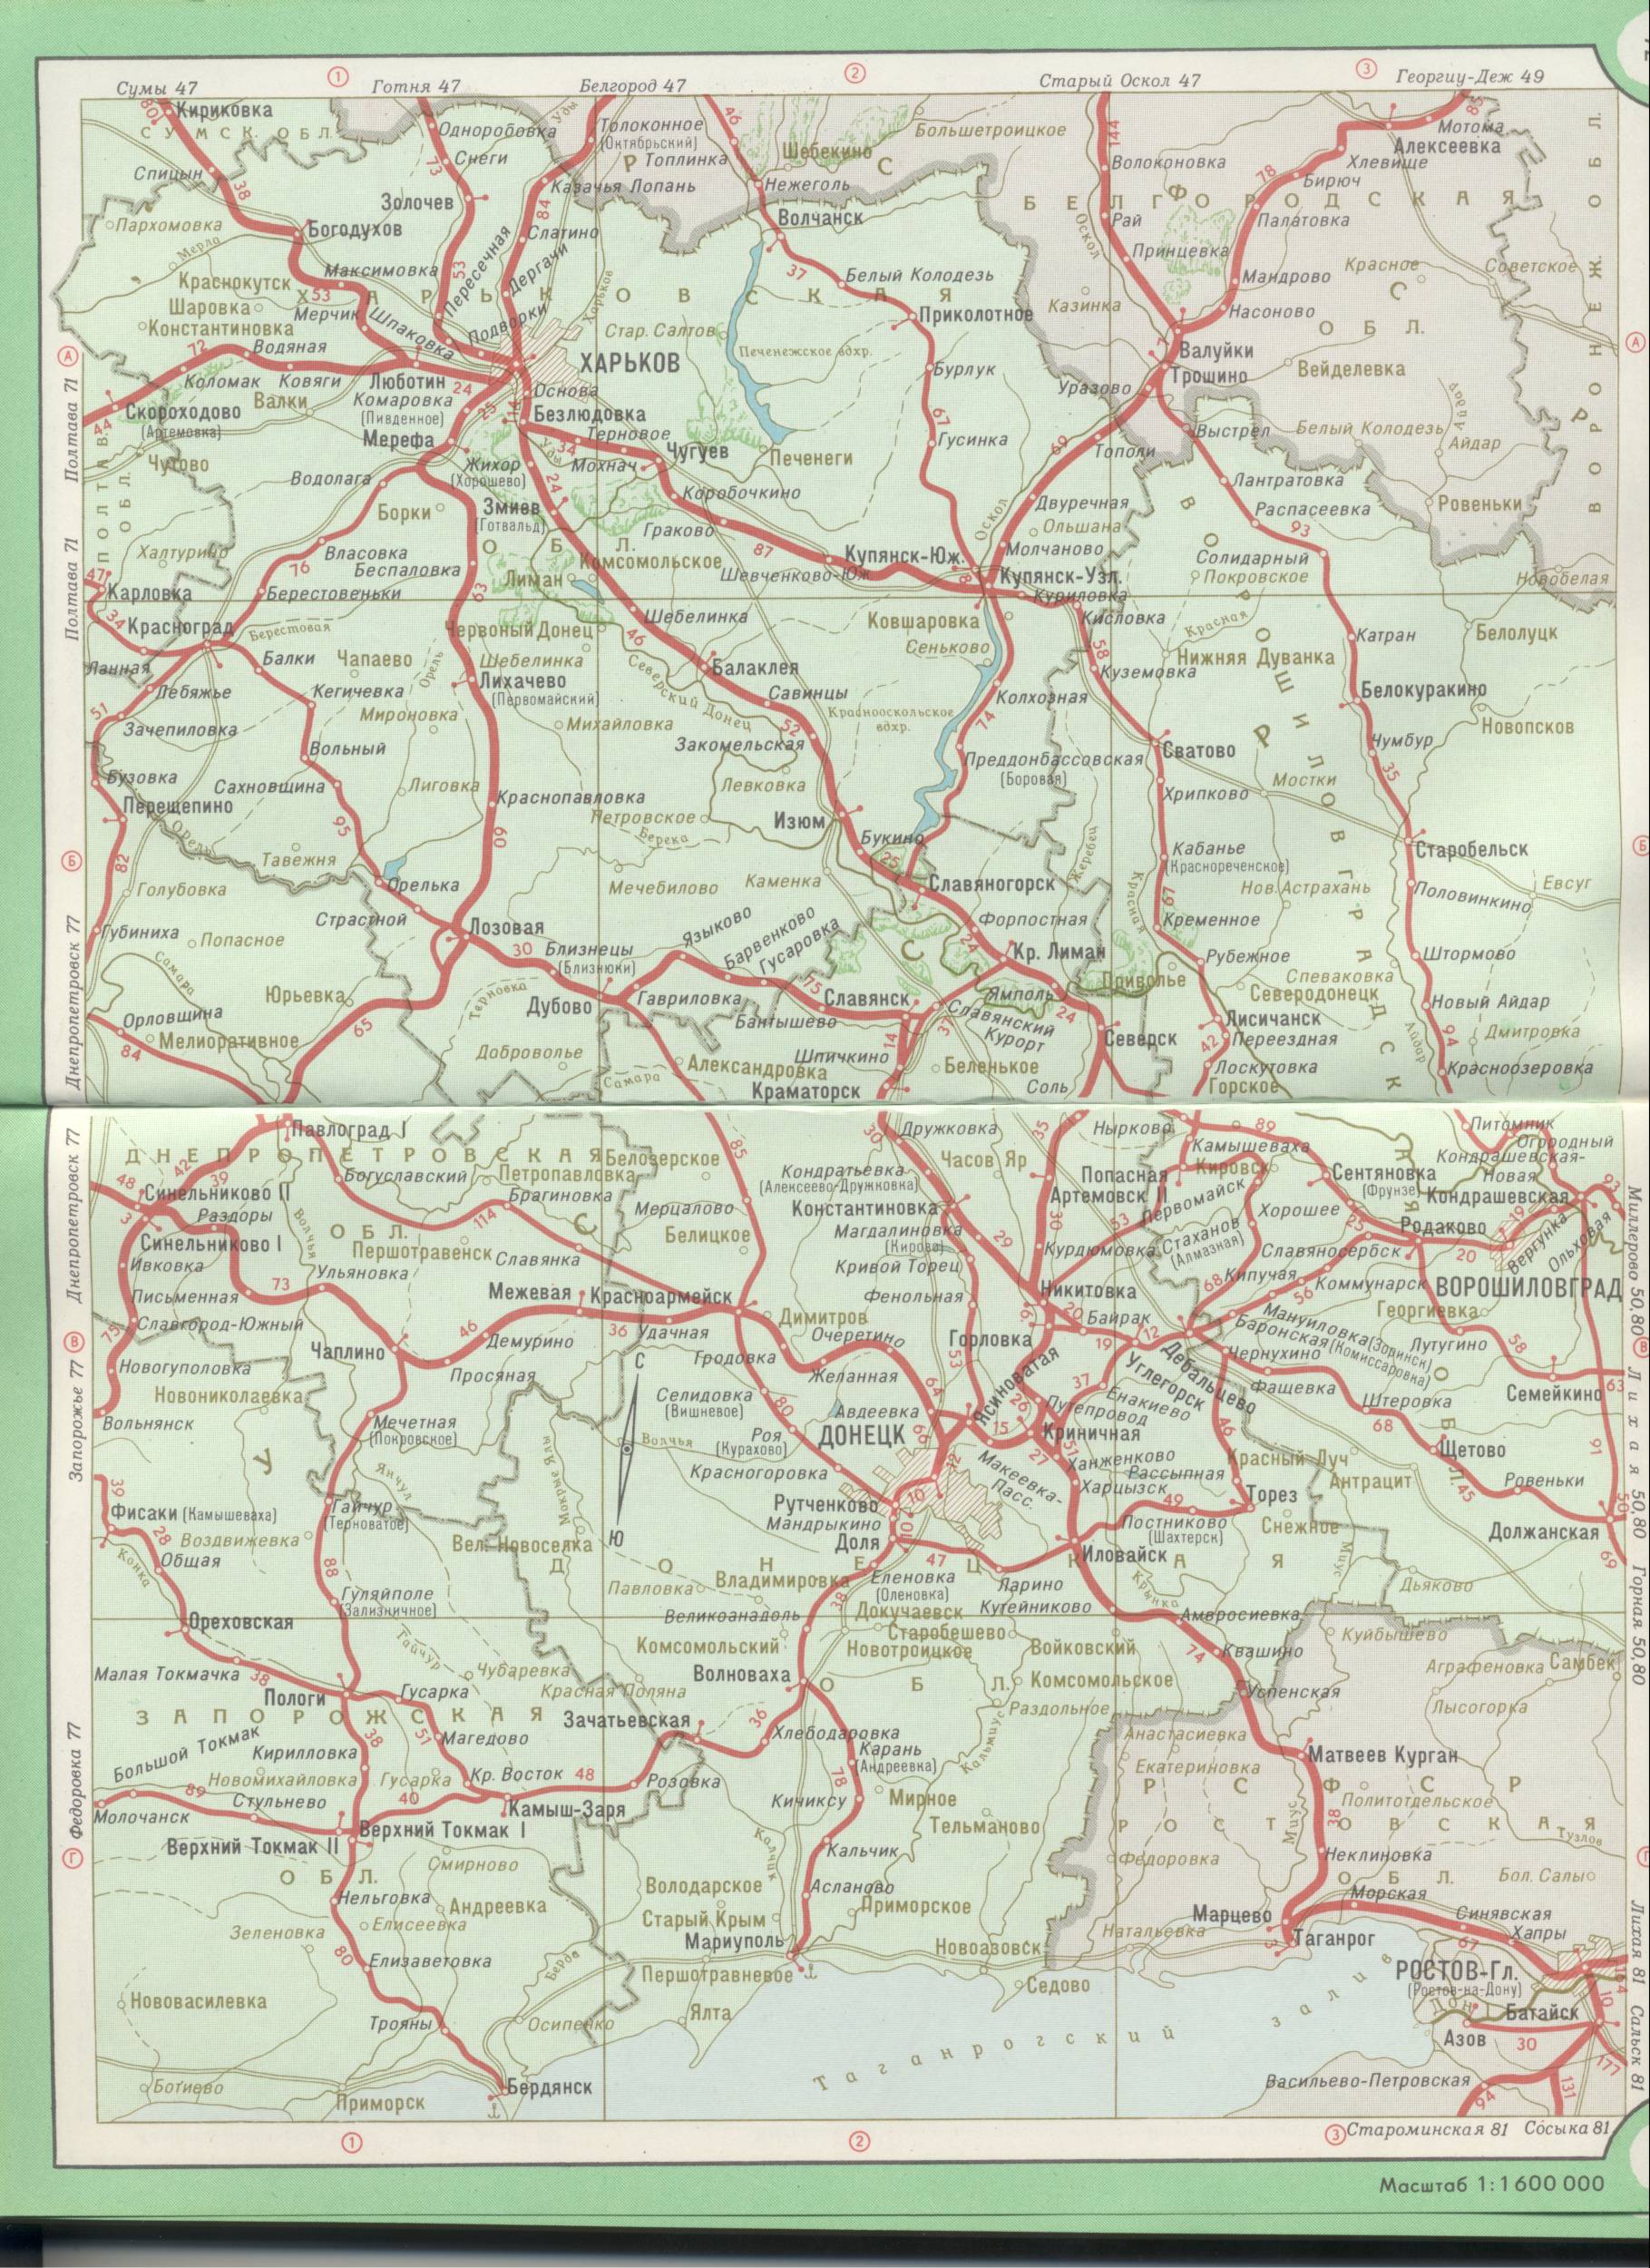 Map of Ukraine. Driving railways of Ukraine - Kharkiv, Dnepropetrovsk